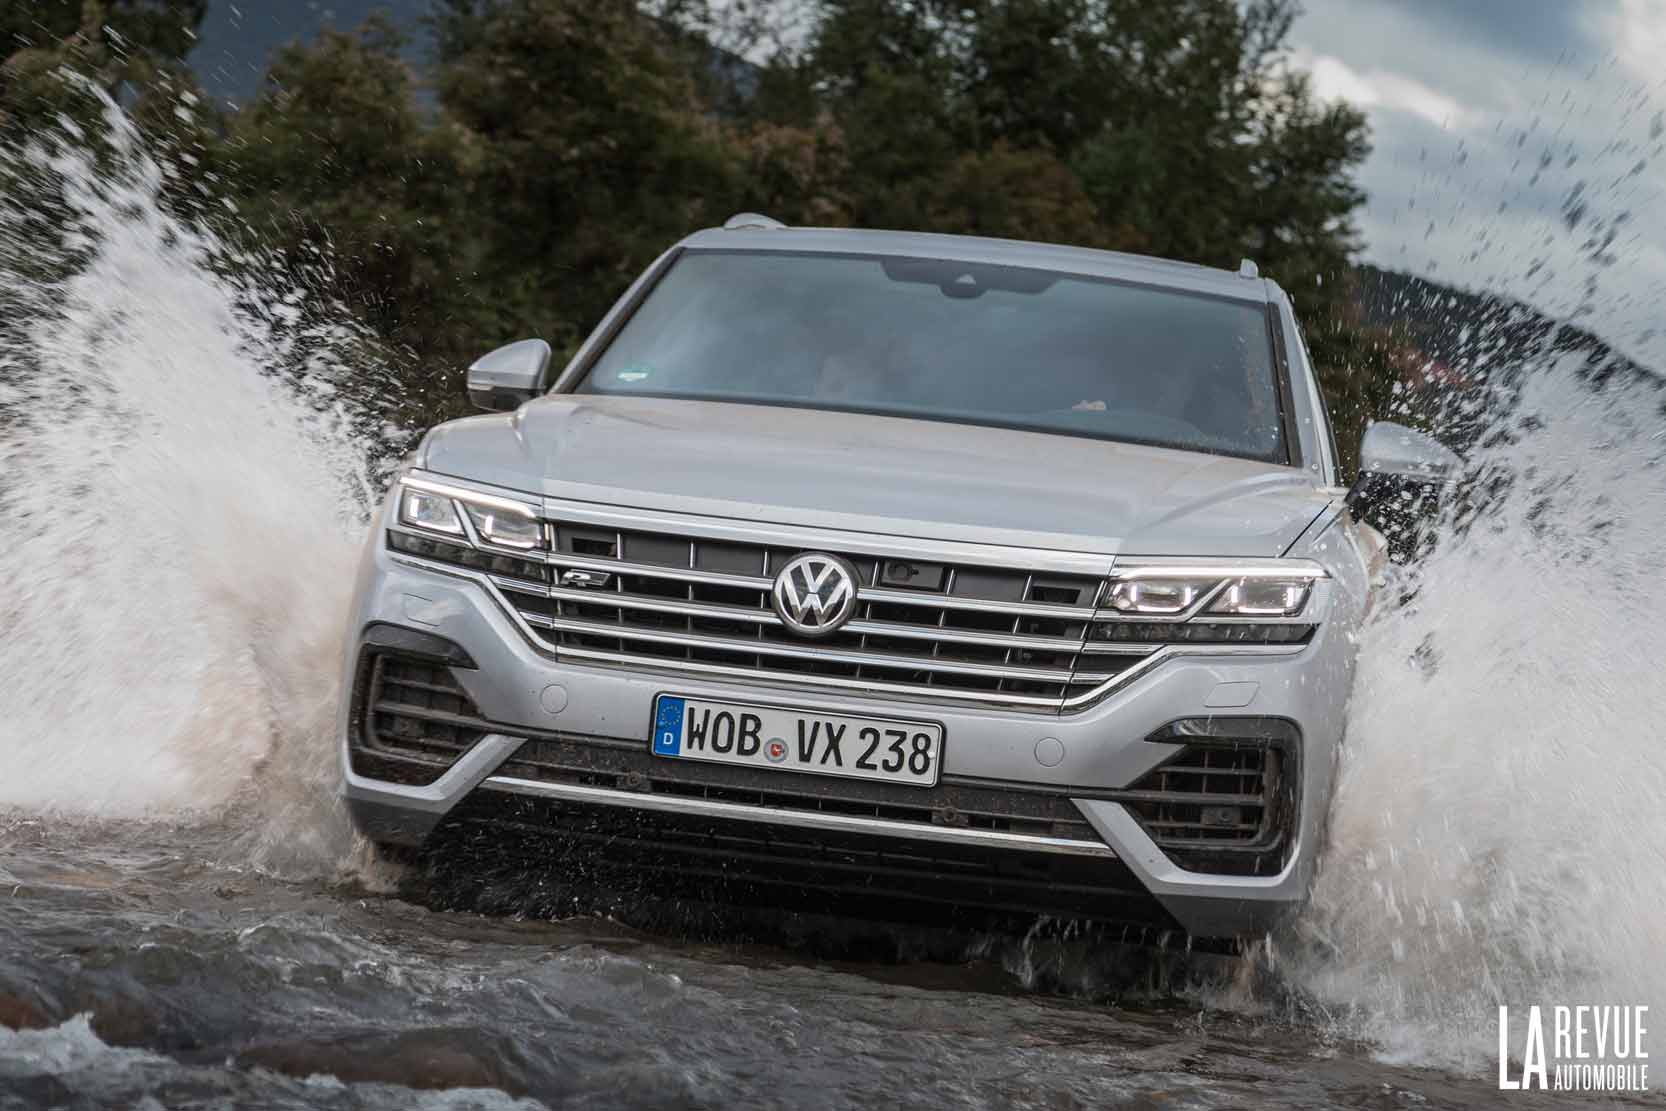 Image principale de l'actu: Le nouveau Volkswagen Touareg 4Motion et son Pack Offroad